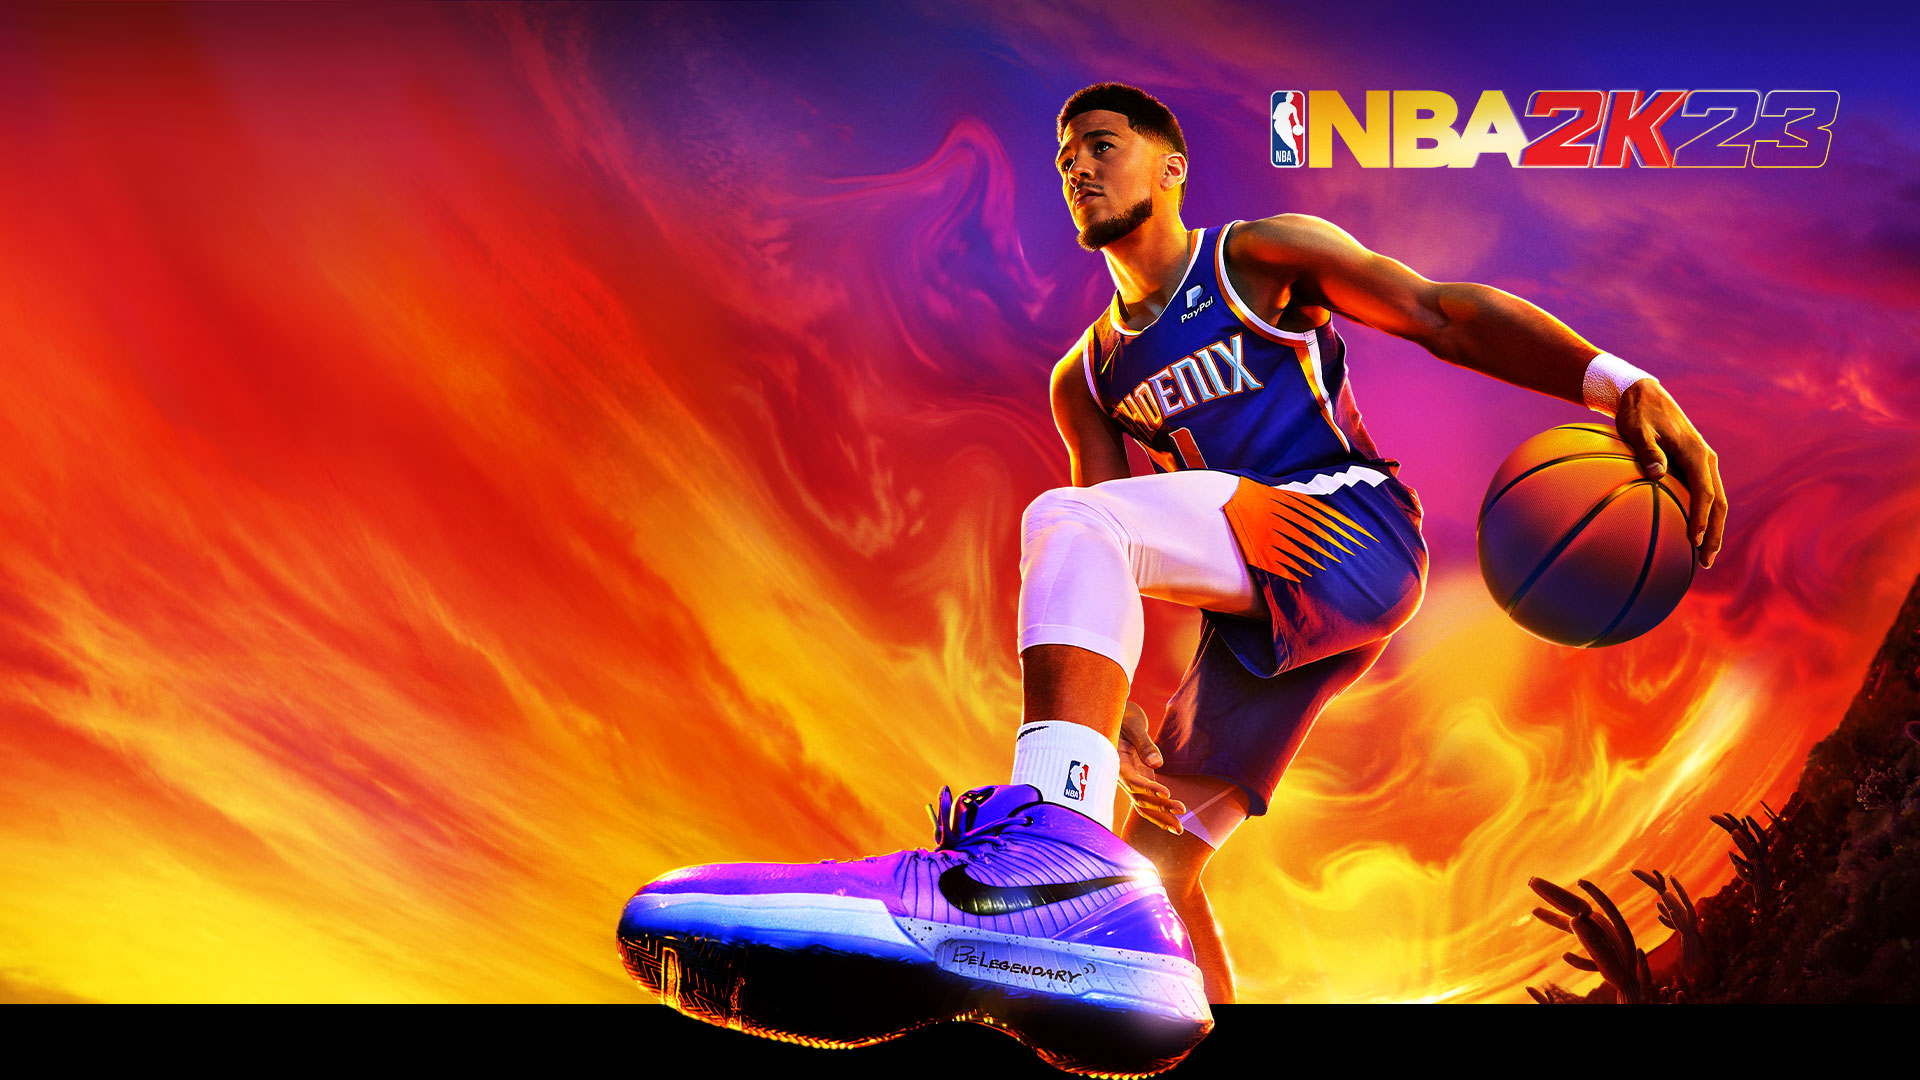 NBA 2K23, Devin Booker, Phoenix Suns -pelaaja nro 1, kuljettaa koripalloa aavikon värikkään taivaan alla.